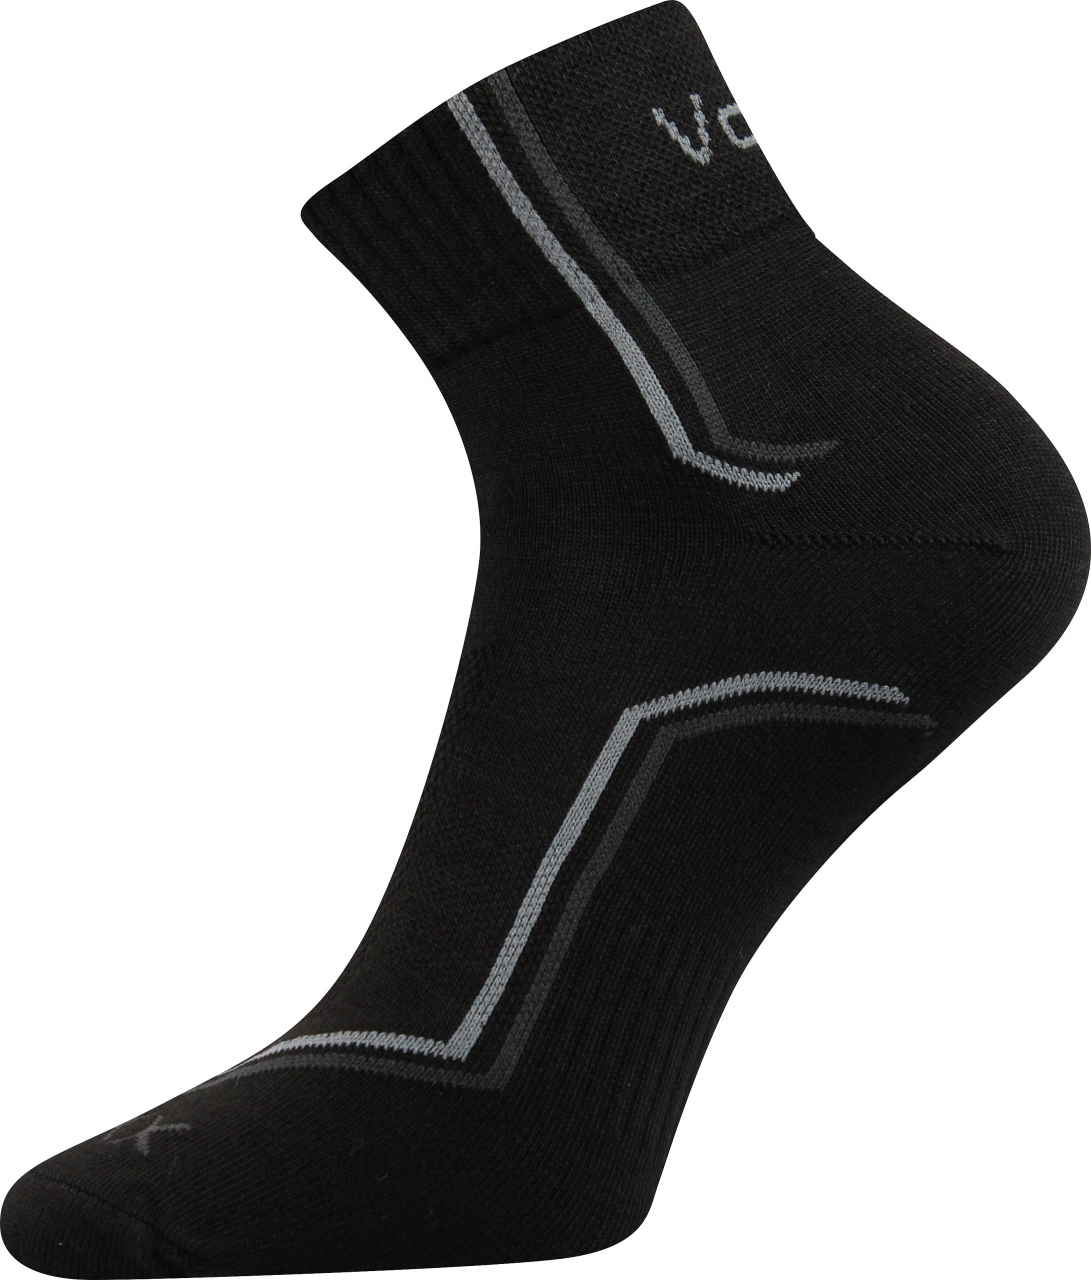 Ponožky sportovní Voxx Kroton silproX - černé, 43-46